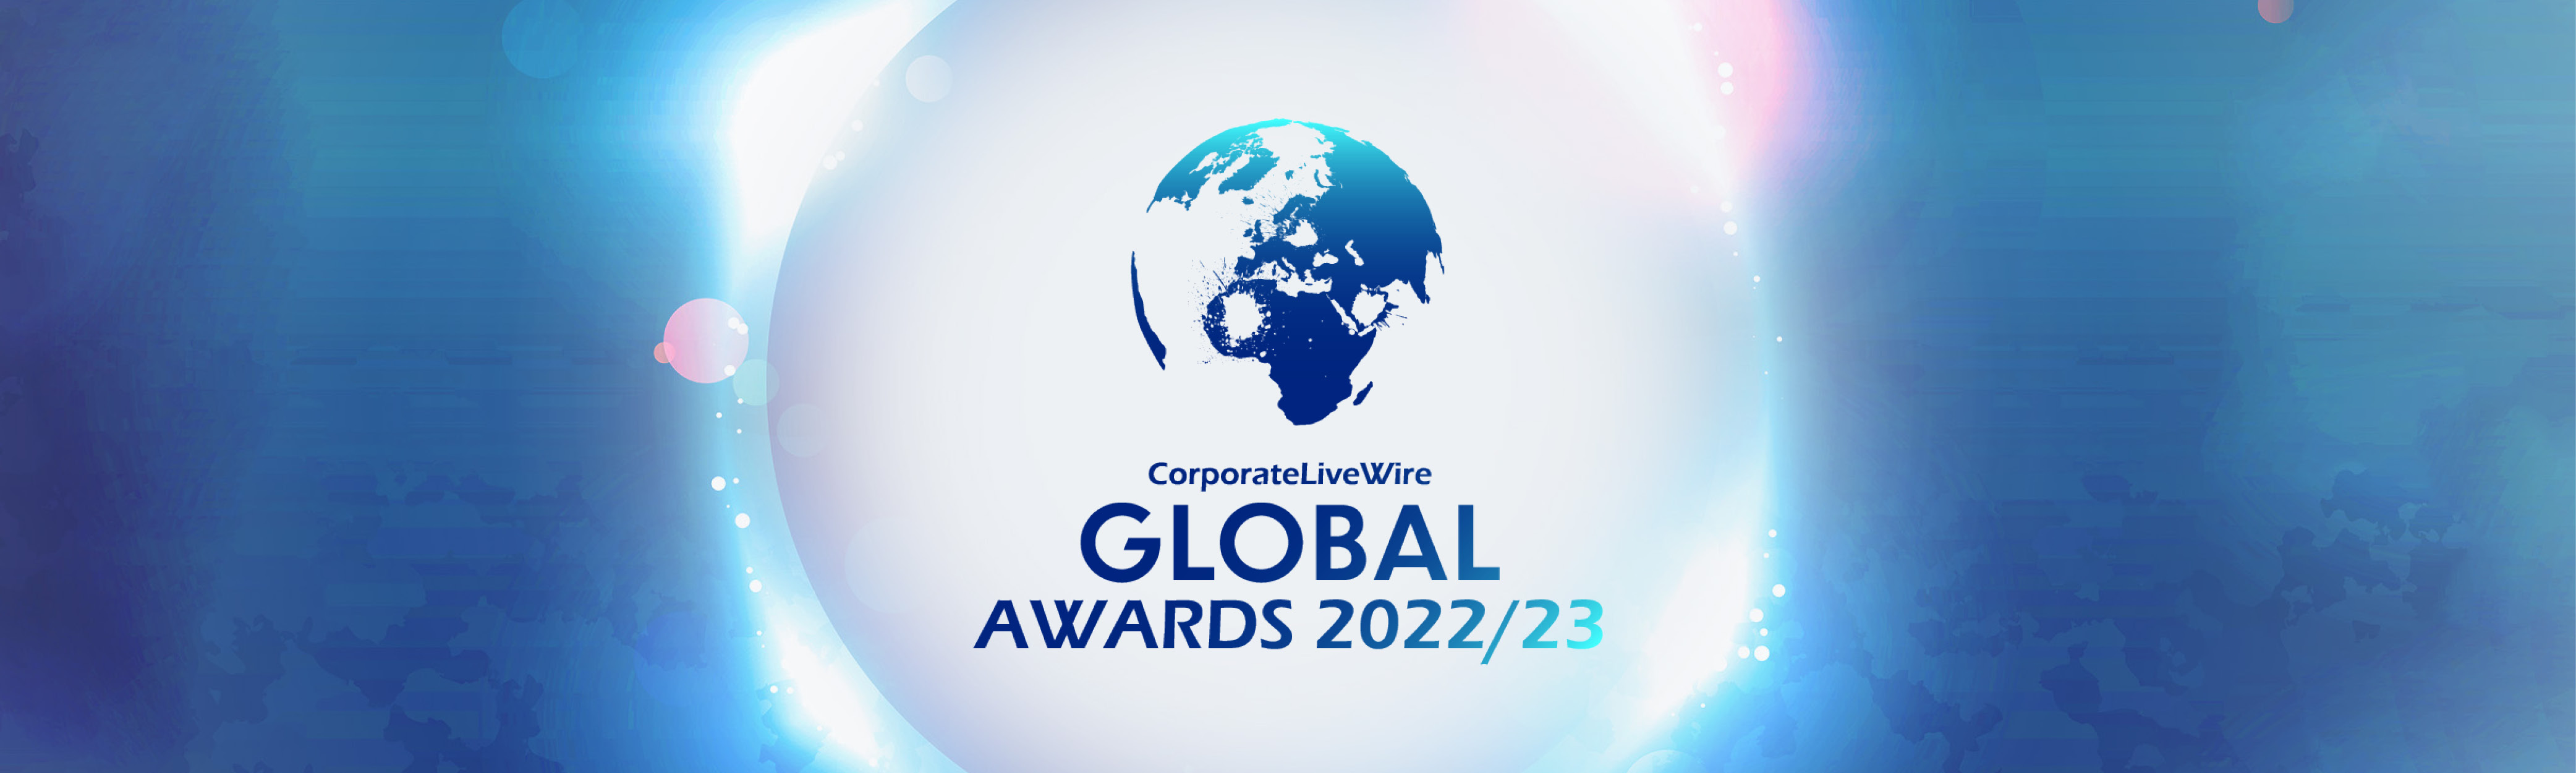 Global Awards 2022/23